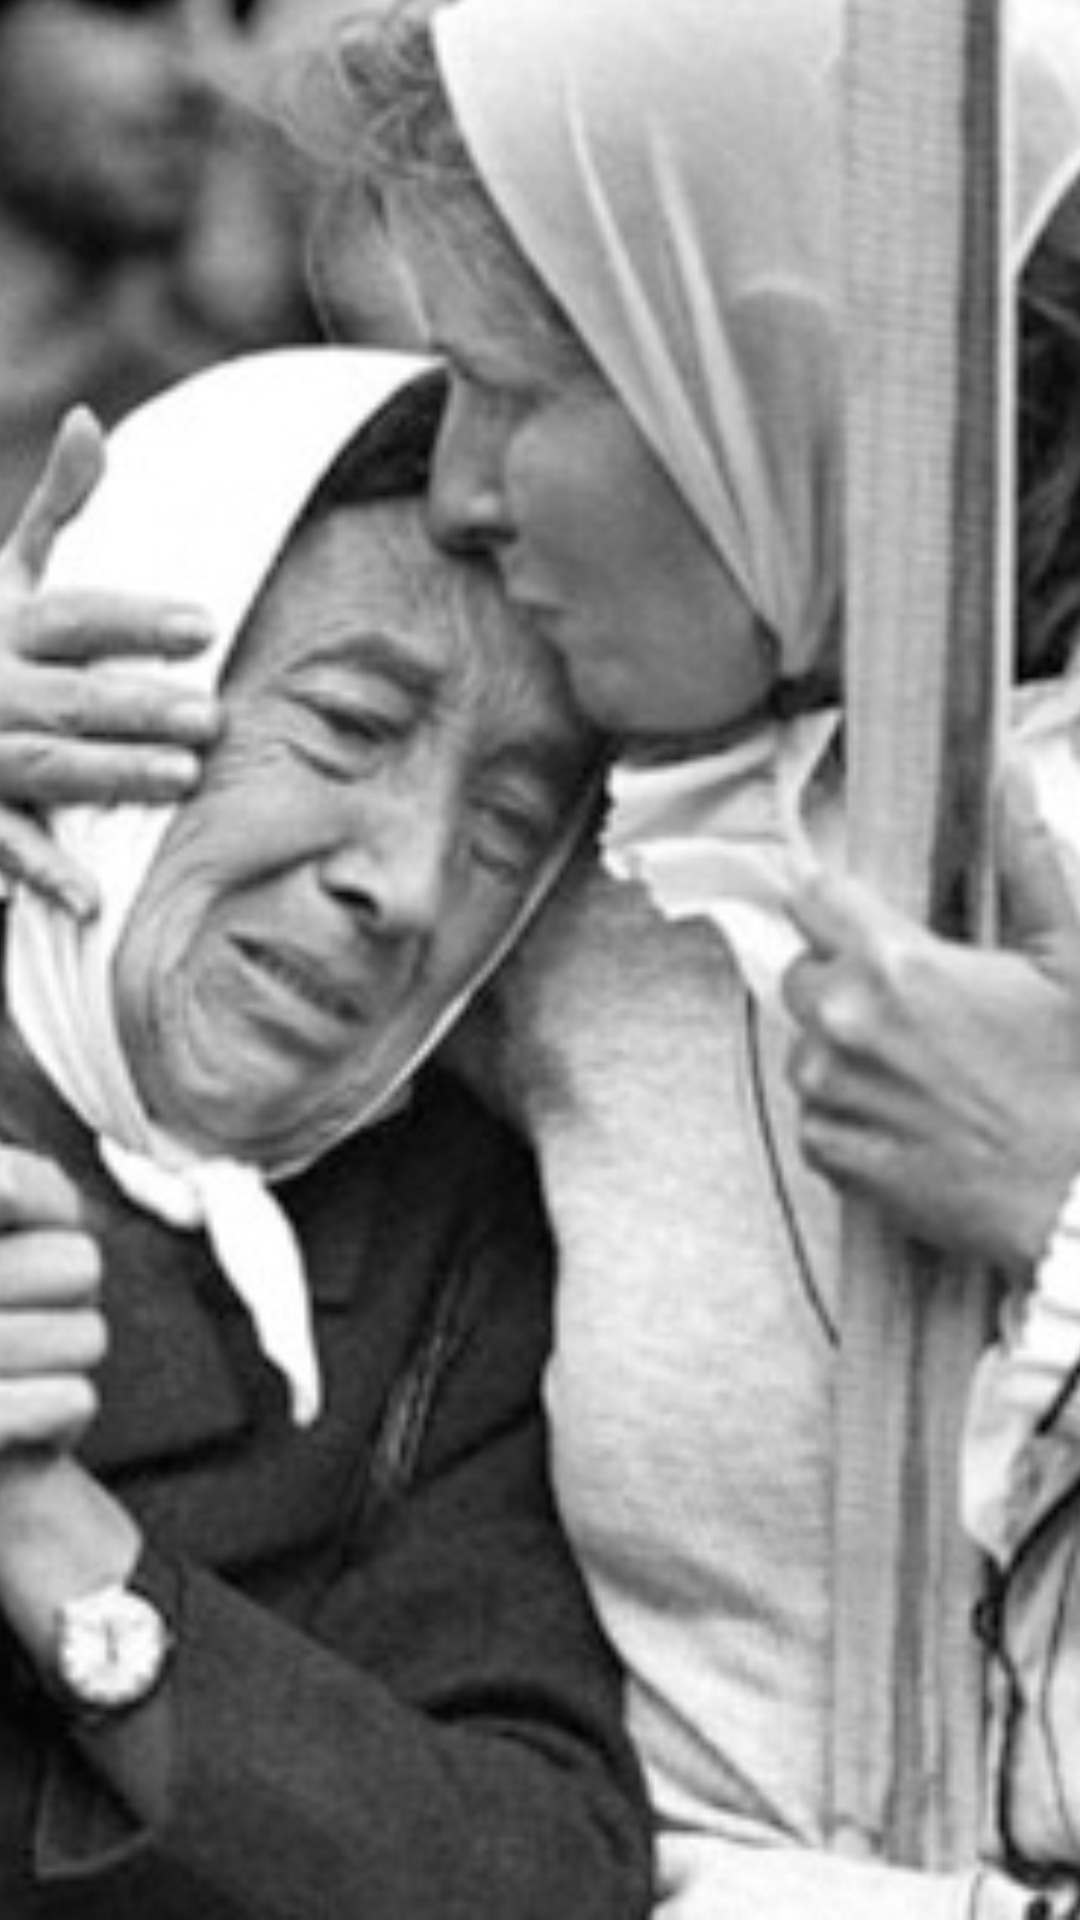 Abuela de plaza de mayo durante el juicio,emocionada, mientras otra la abraza y besa en la frente.